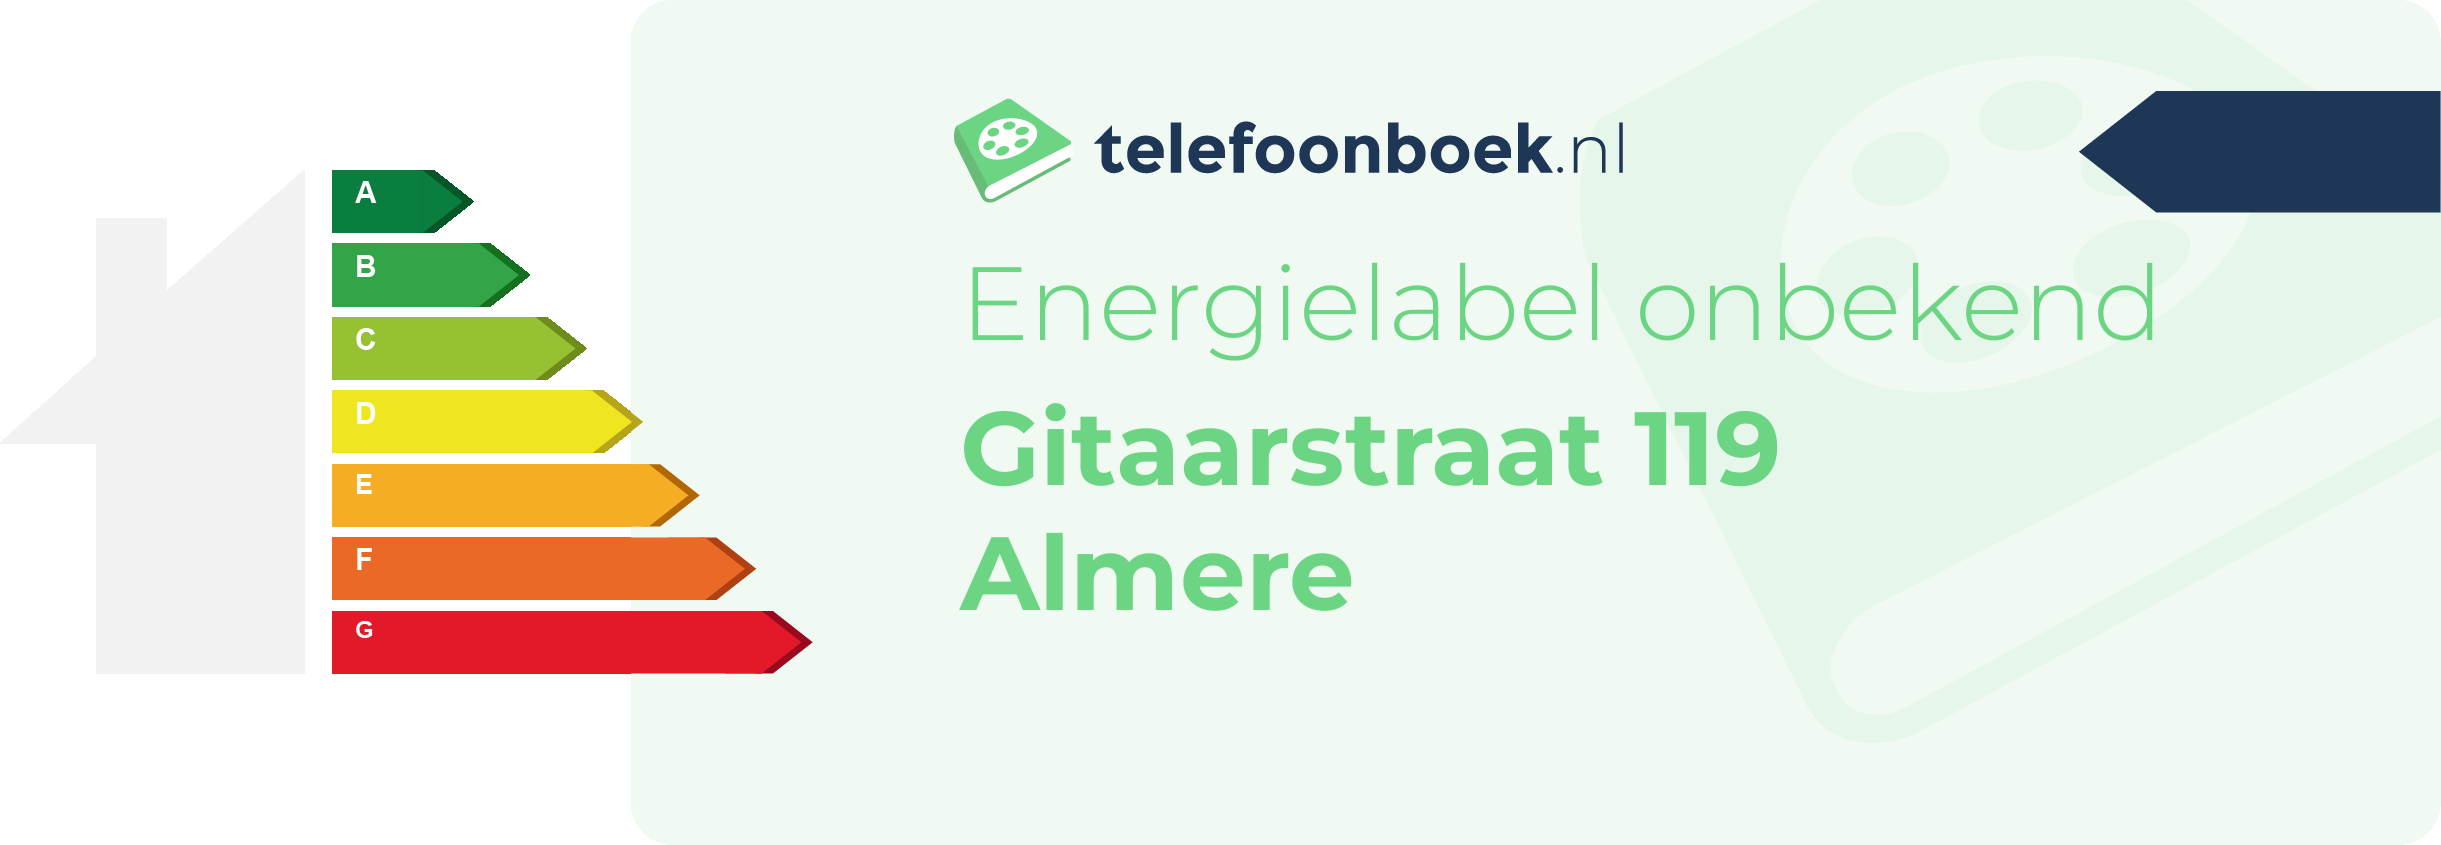 Energielabel Gitaarstraat 119 Almere